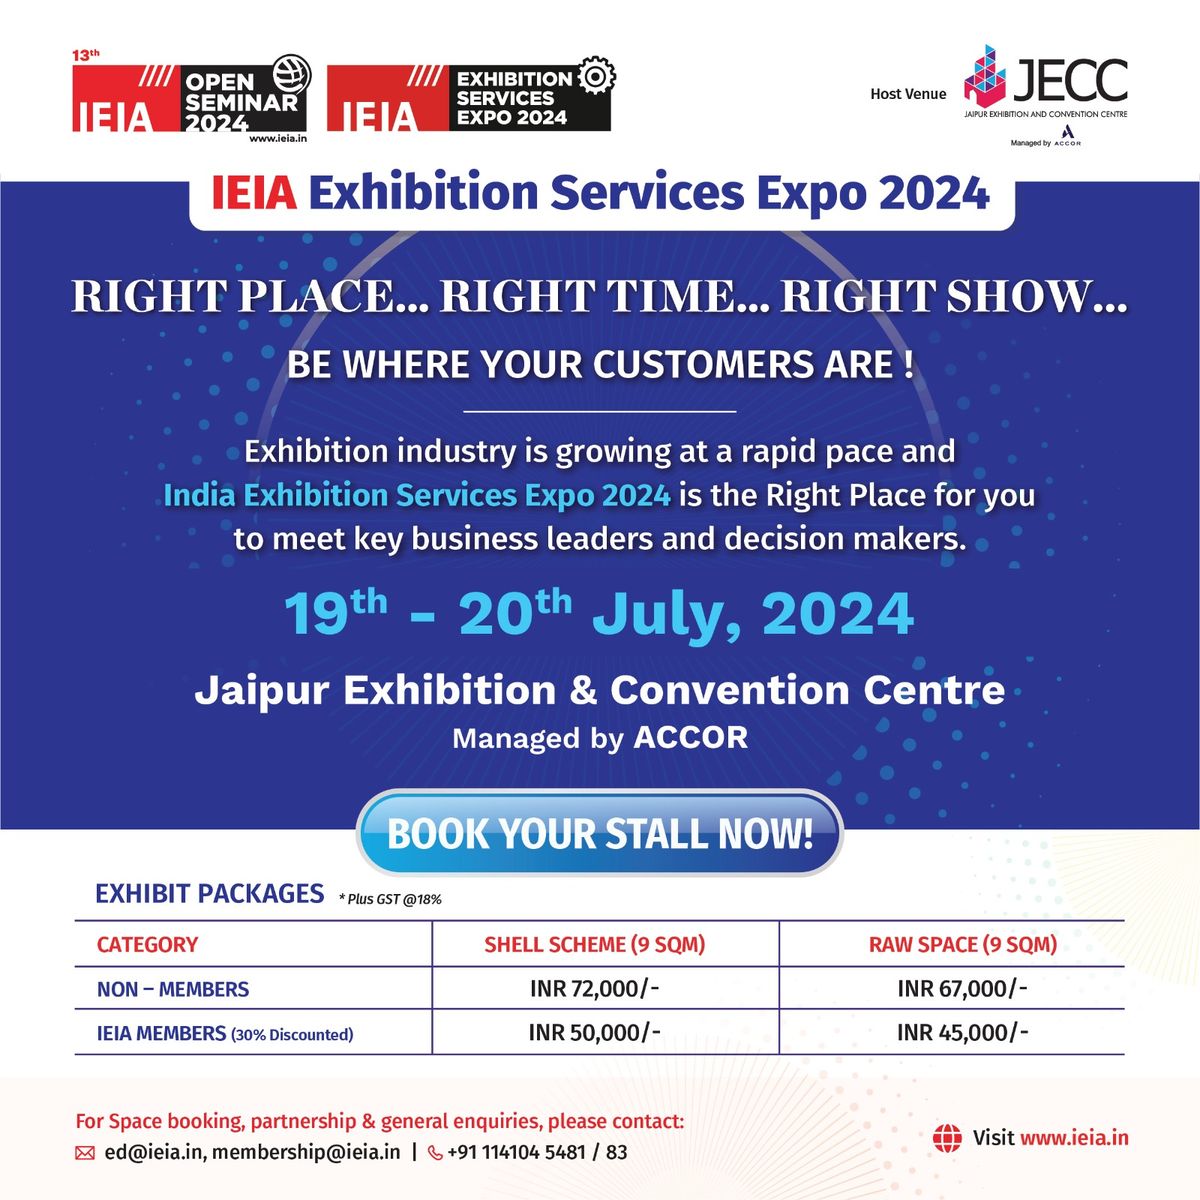 IEIA Open Seminar & Exhibition Services Expo 2024